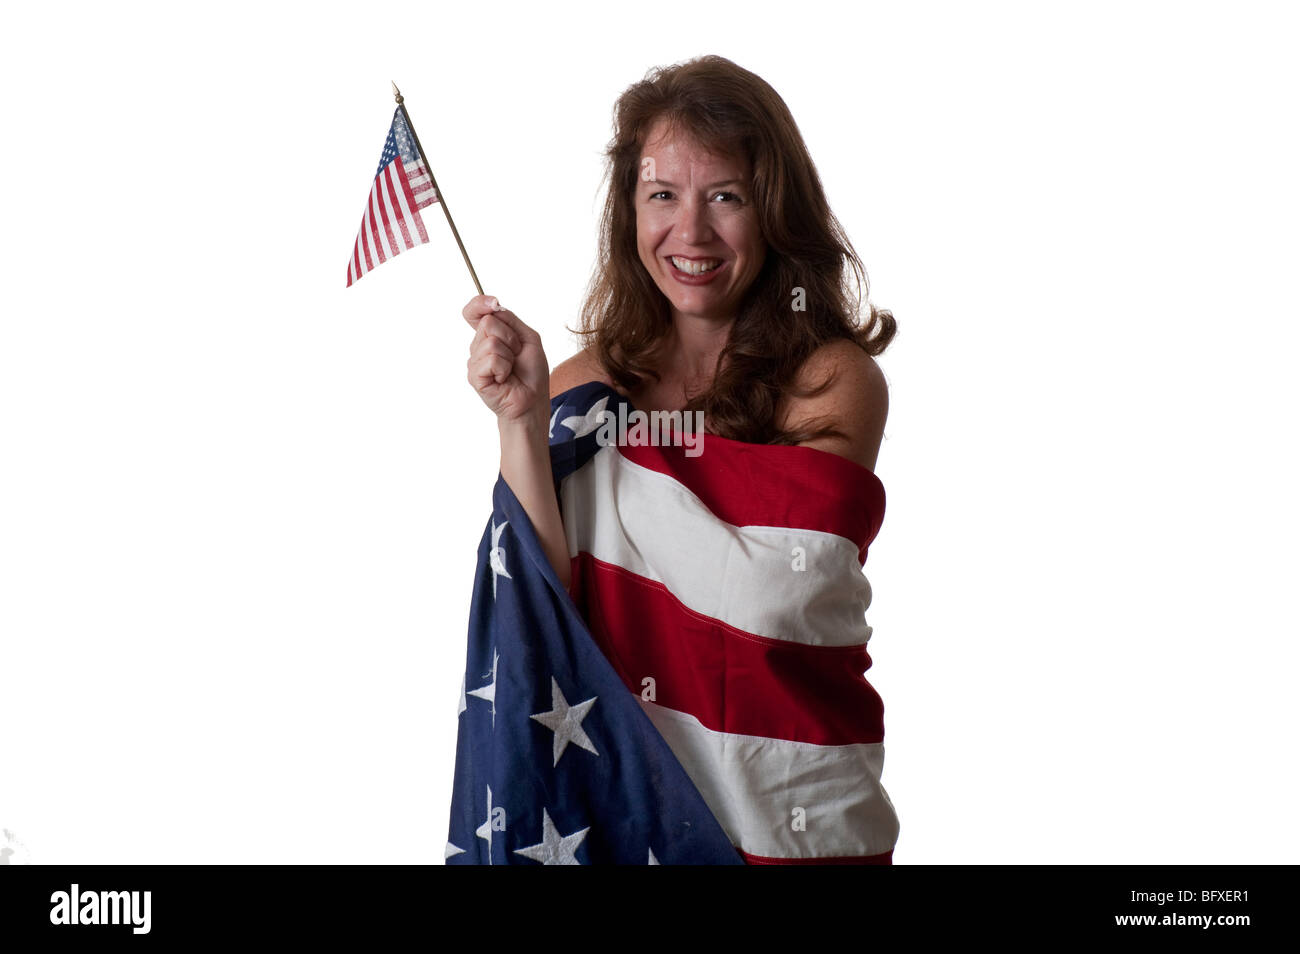 attraktive junge Frau, die in amerikanische Flagge mit winzigen Fahne gehüllt Stockfoto